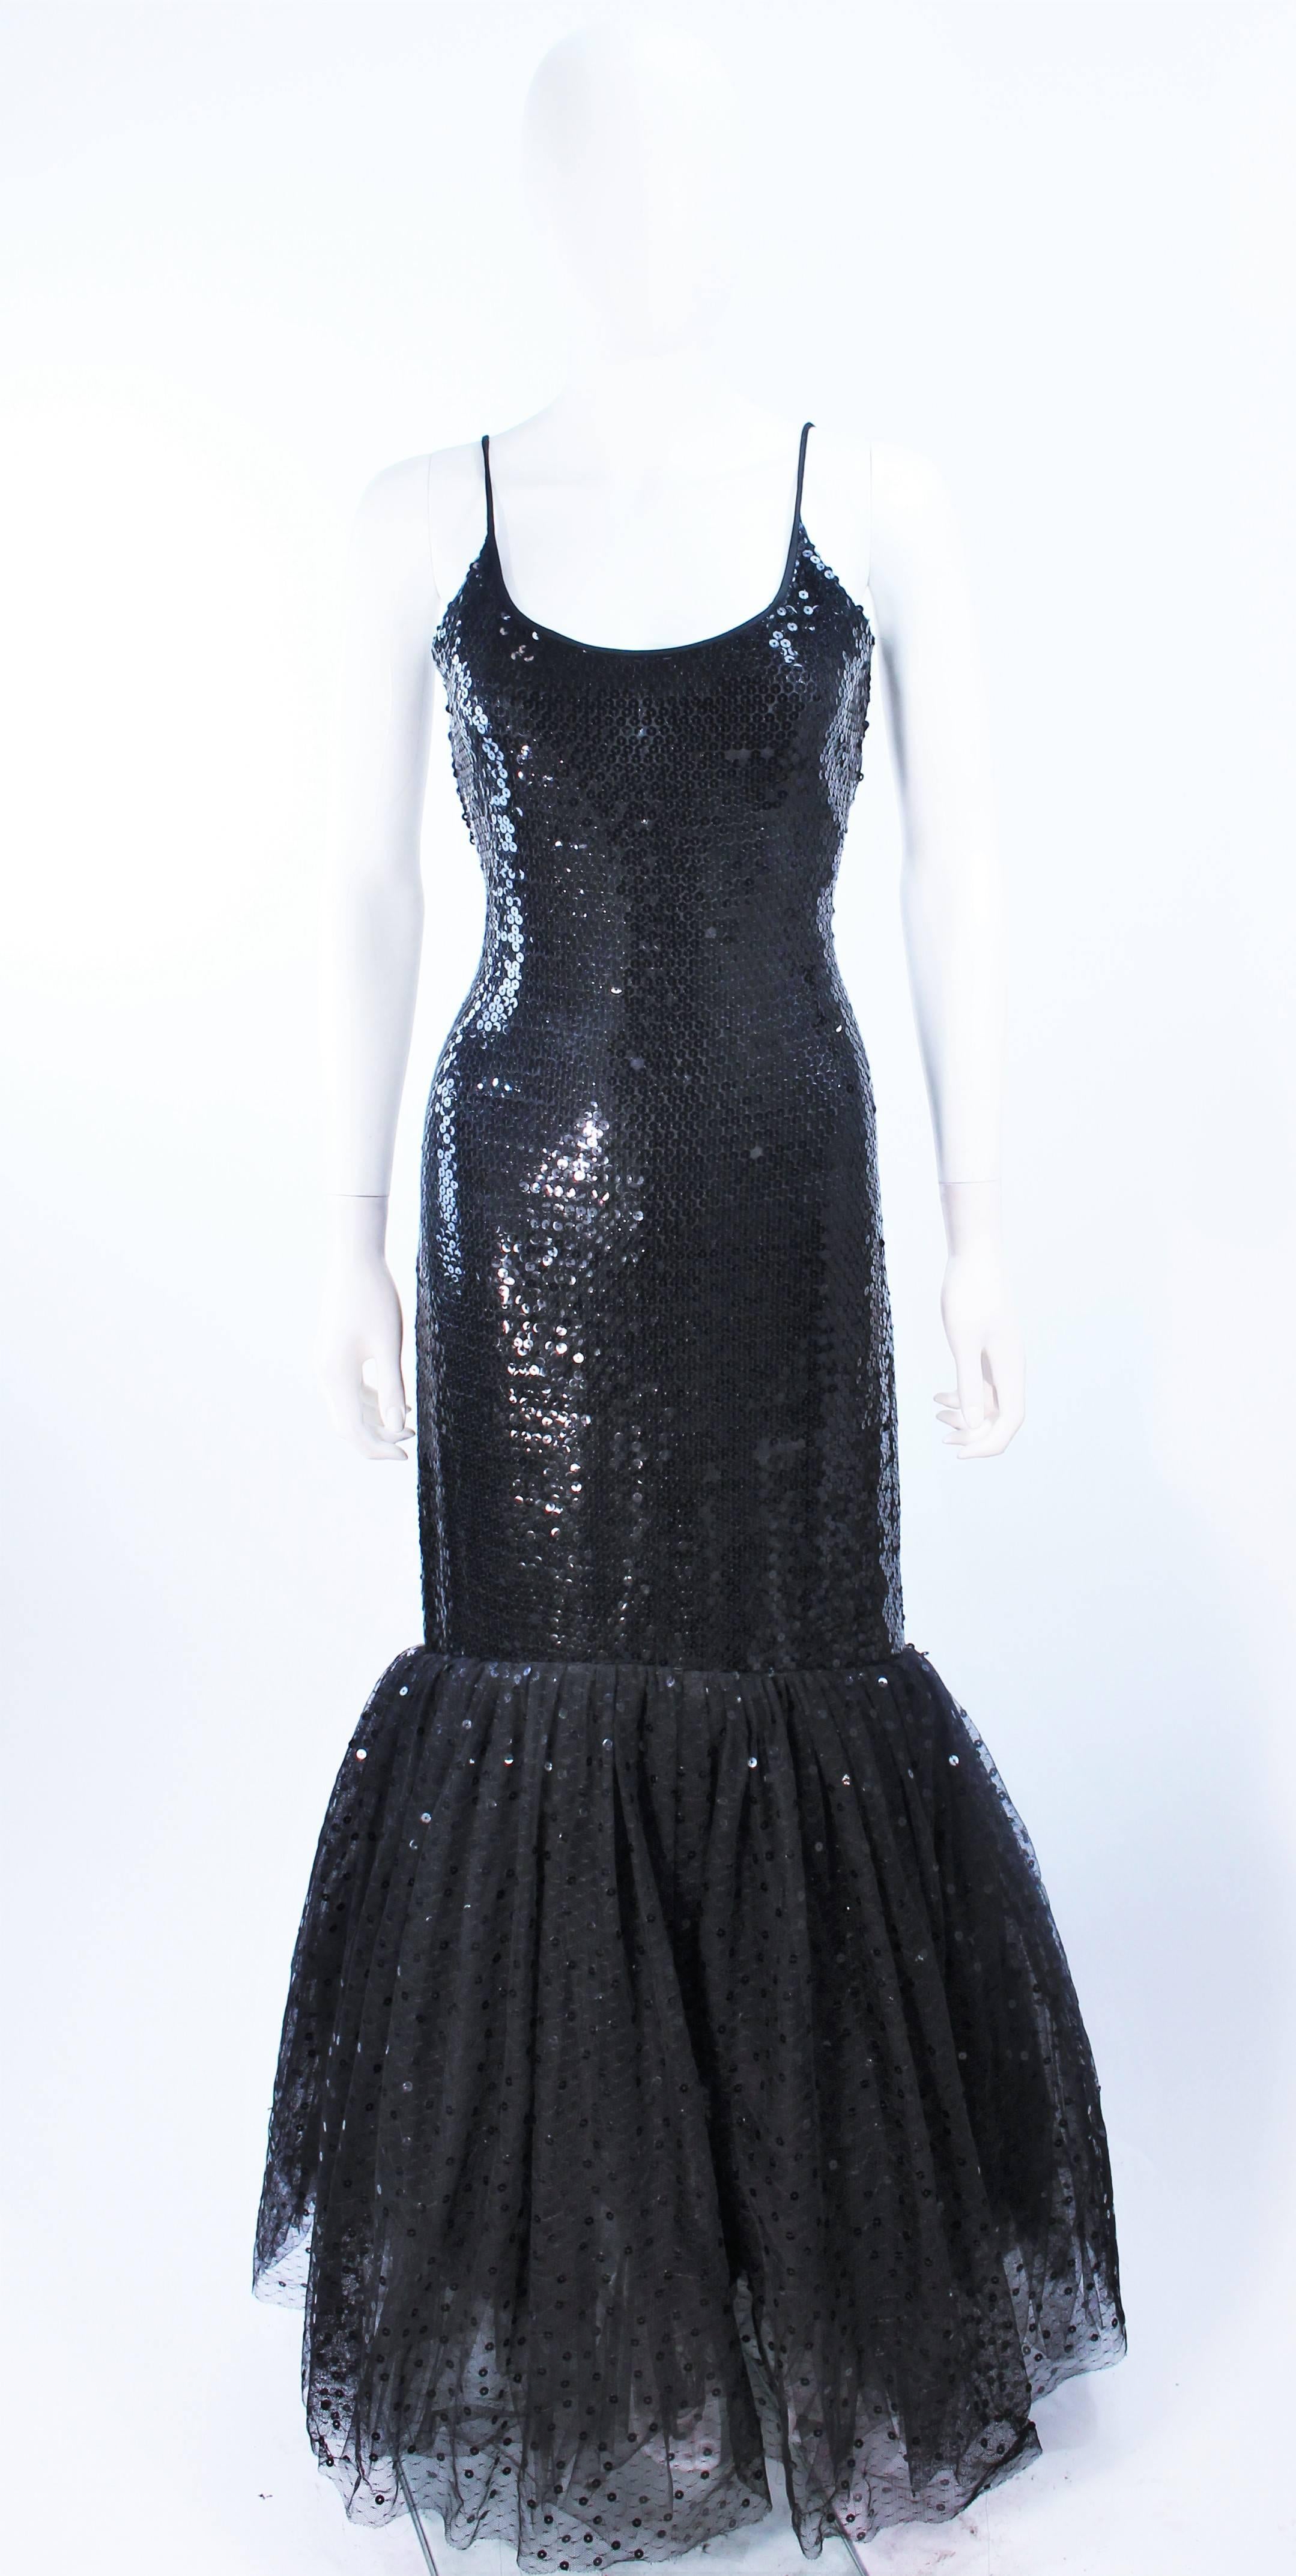 Cette robe Jill Richards est composée d'un tissu noir orné de paillettes et d'un ourlet évasé en tulle, avec une application de paillettes. Il y a une fermeture à glissière au centre du dos. Vintage, en excellent état.

**Veuillez croiser les